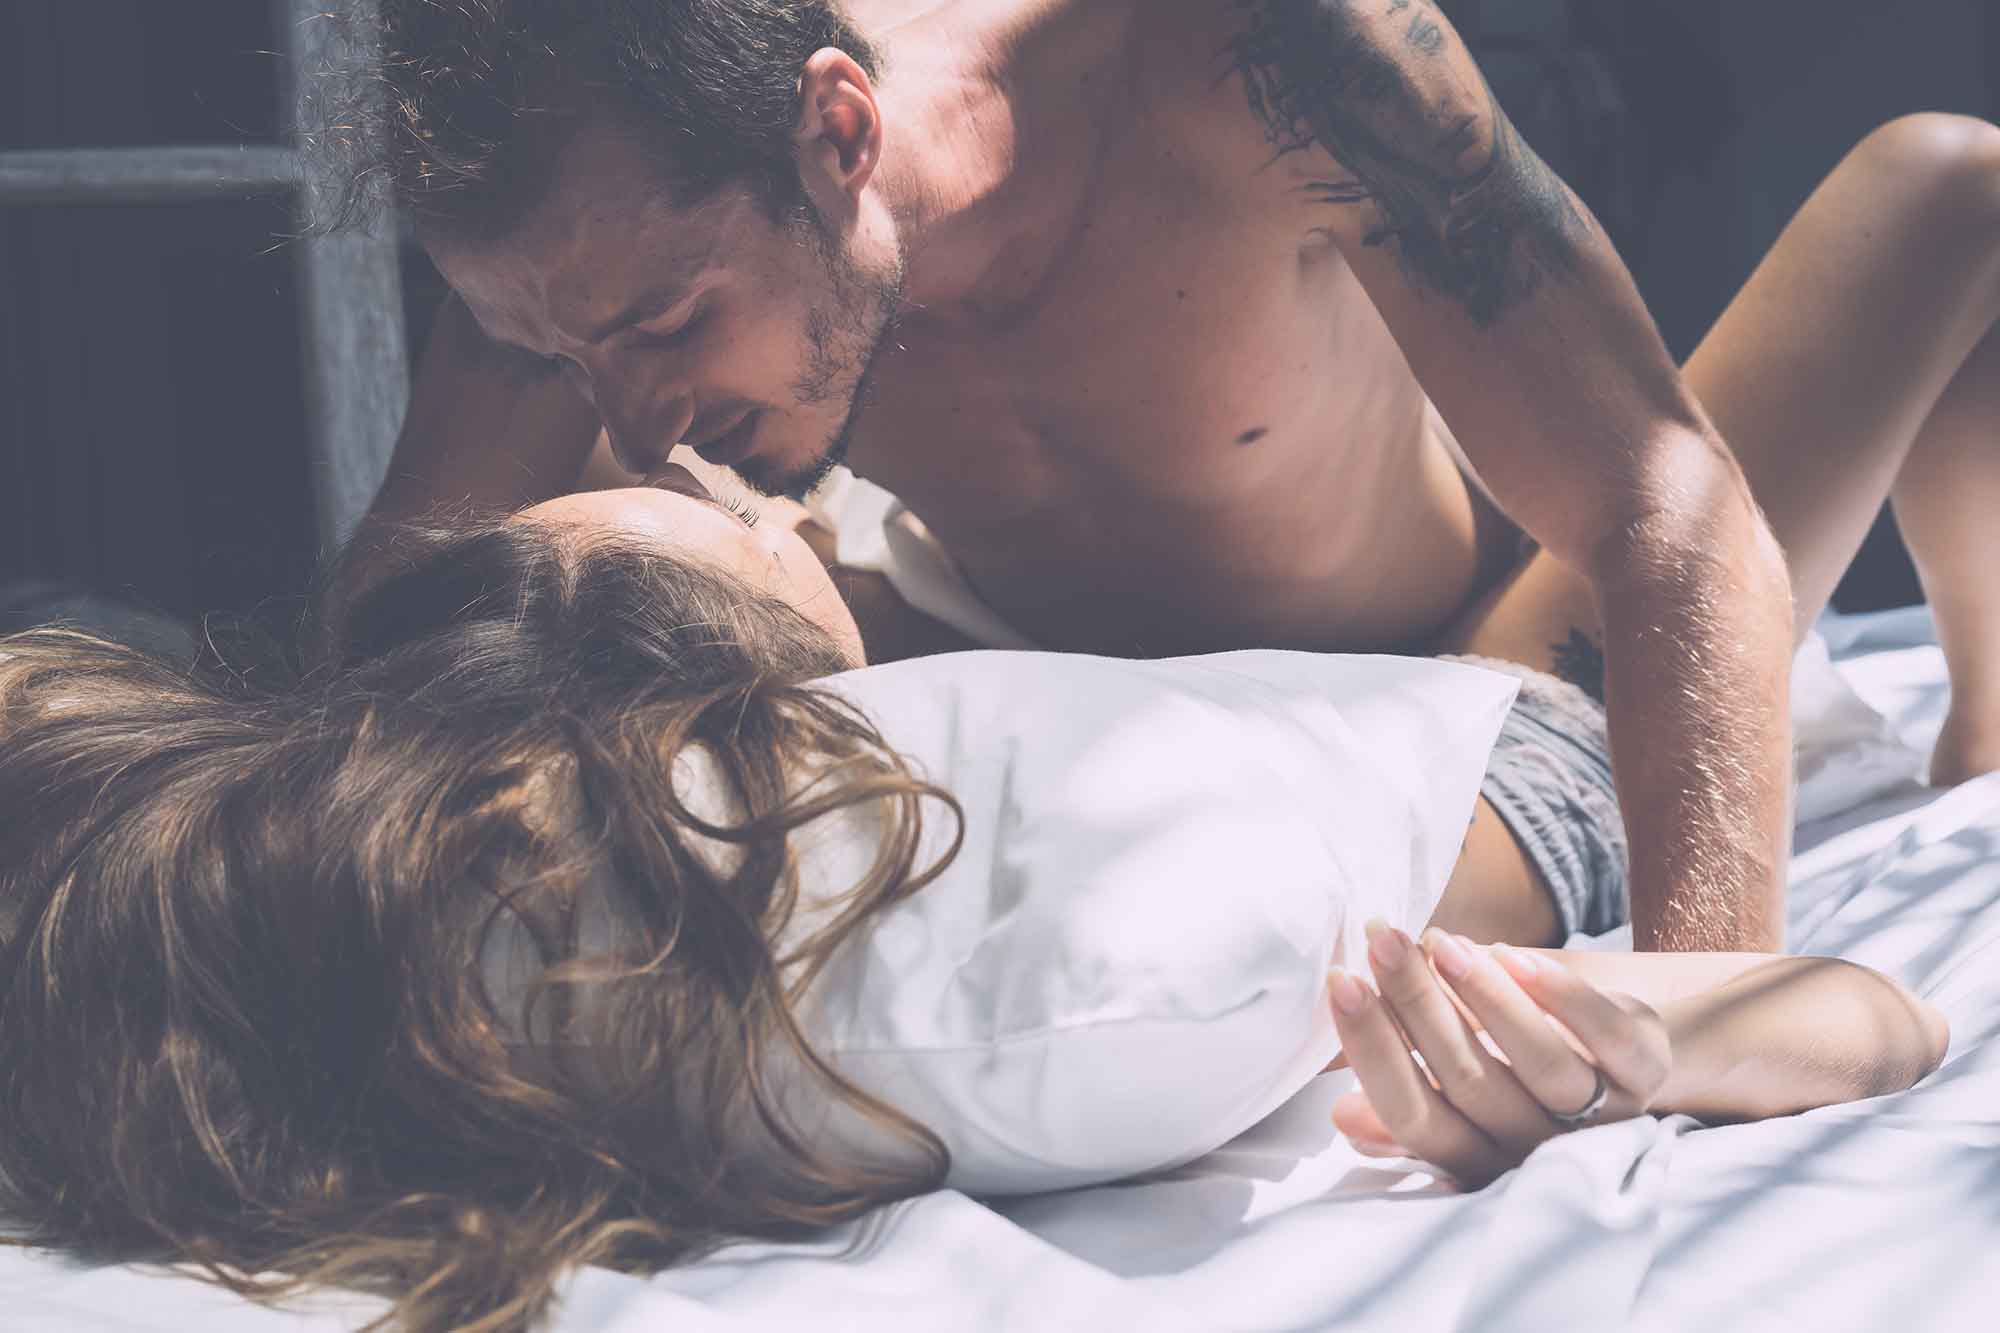 Мужчина и женщина в кровати страсть фото